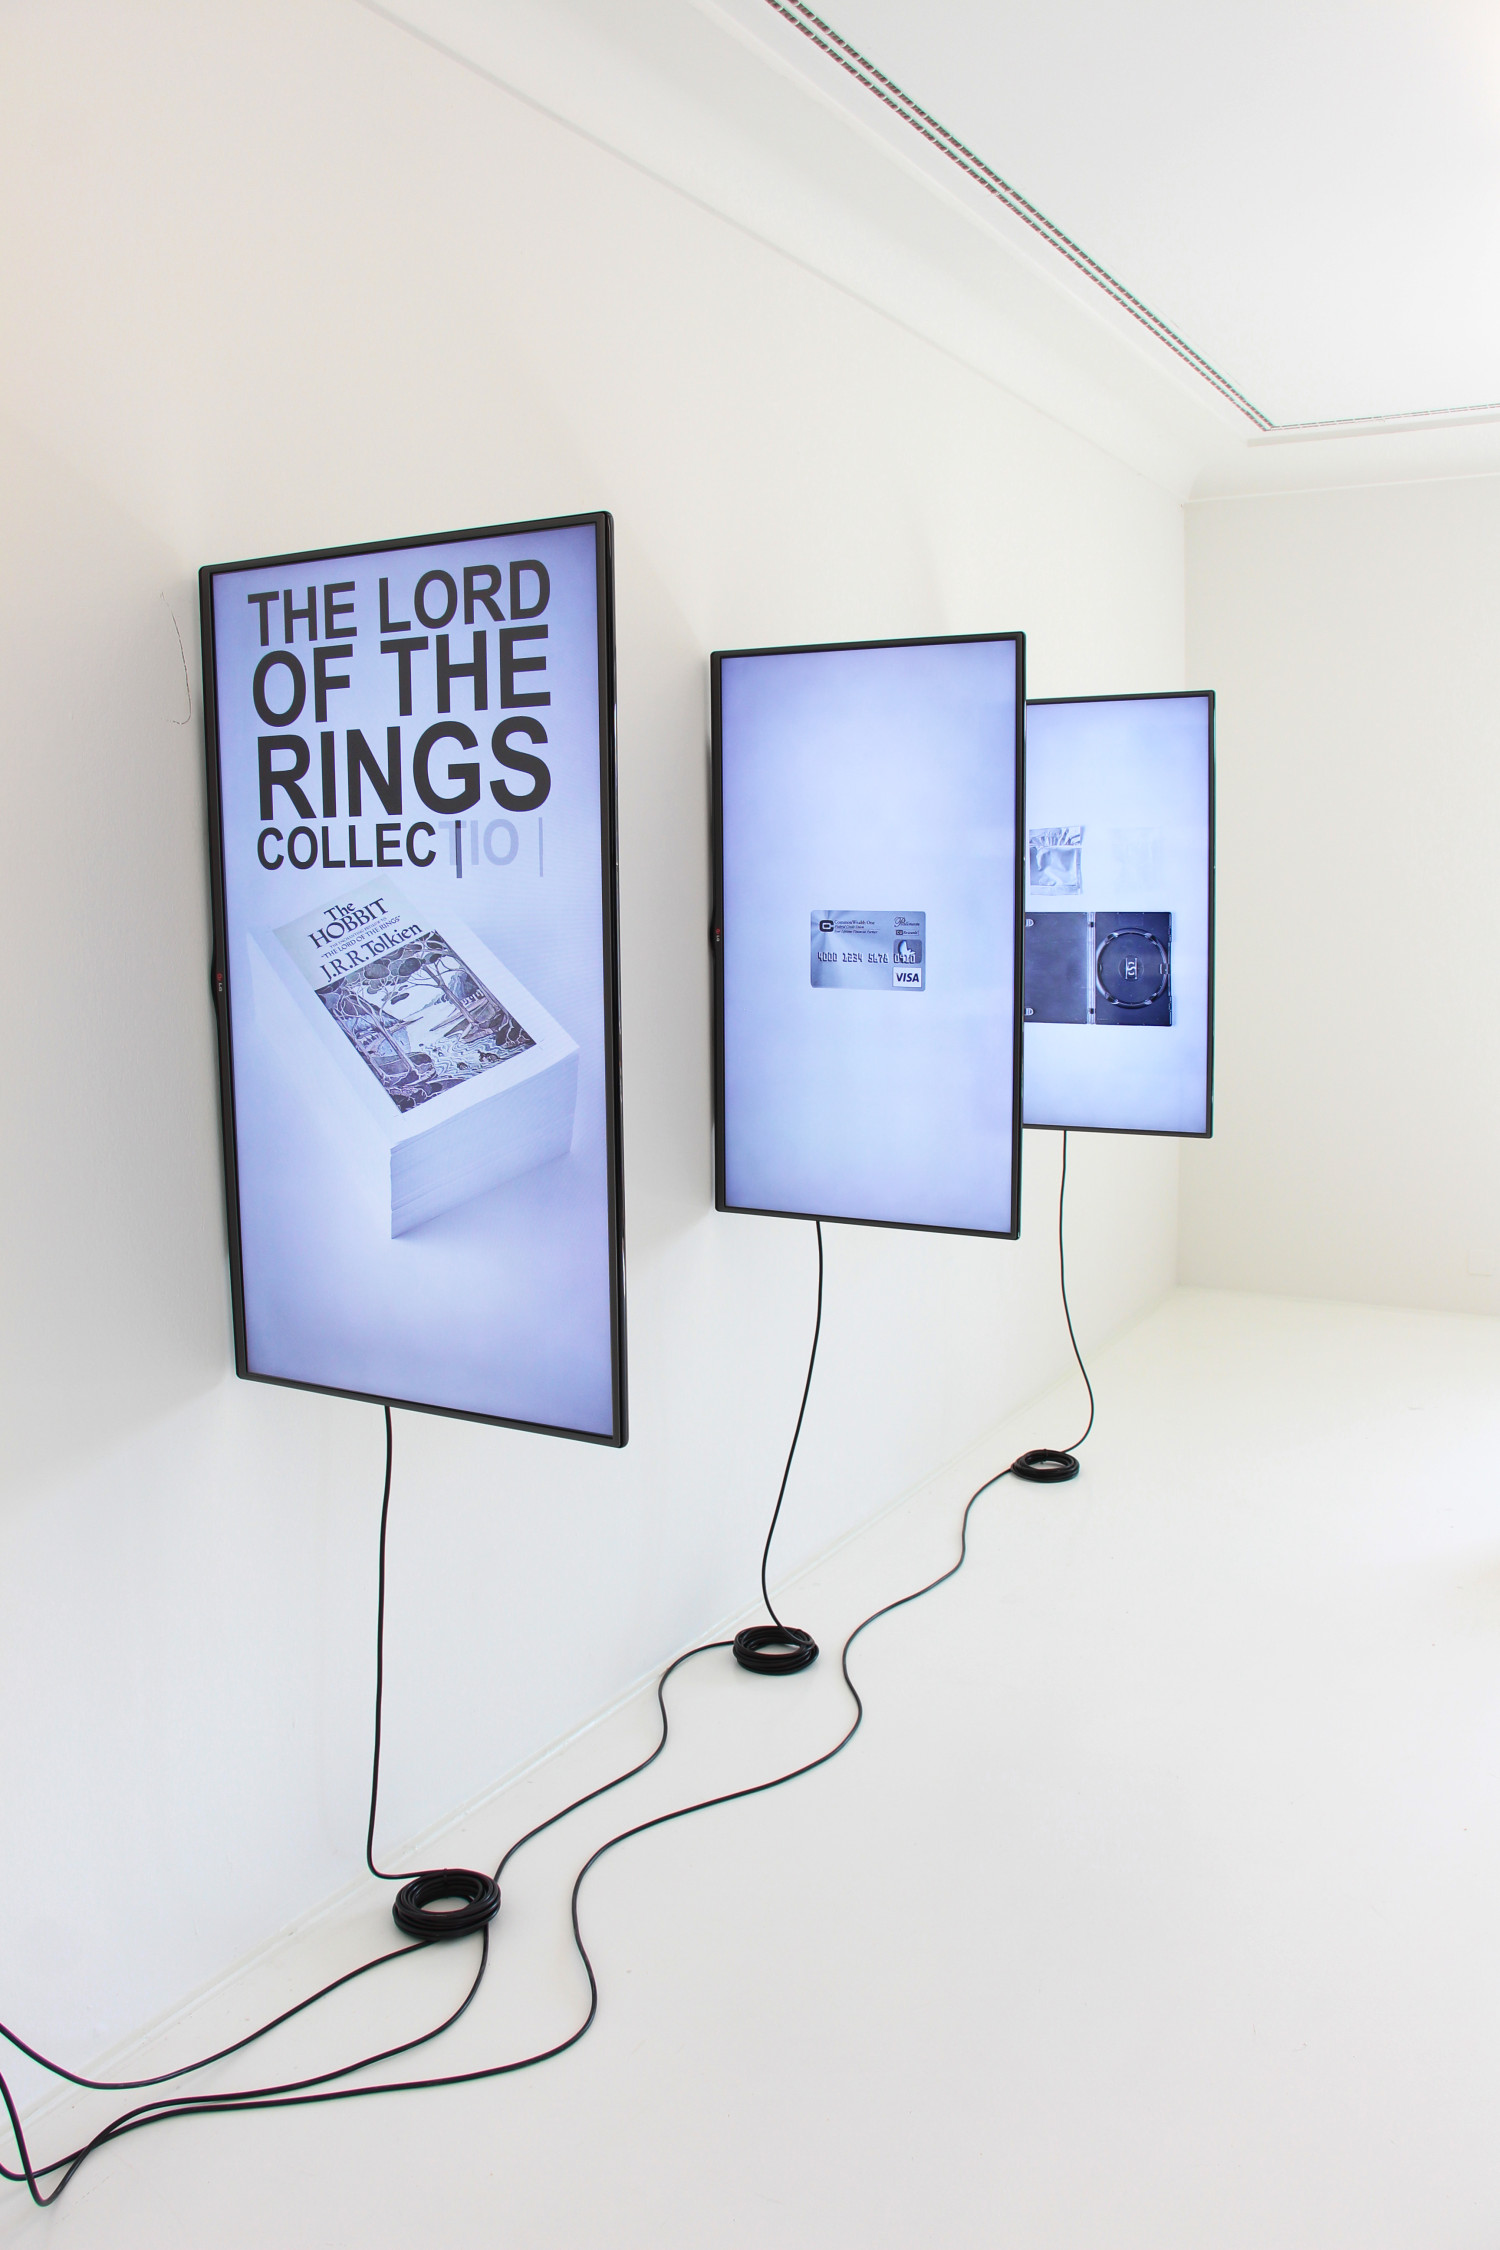 Random Darknet Shopper - The Bot's Collection, installation view at Helmhaus Zurich, 2015